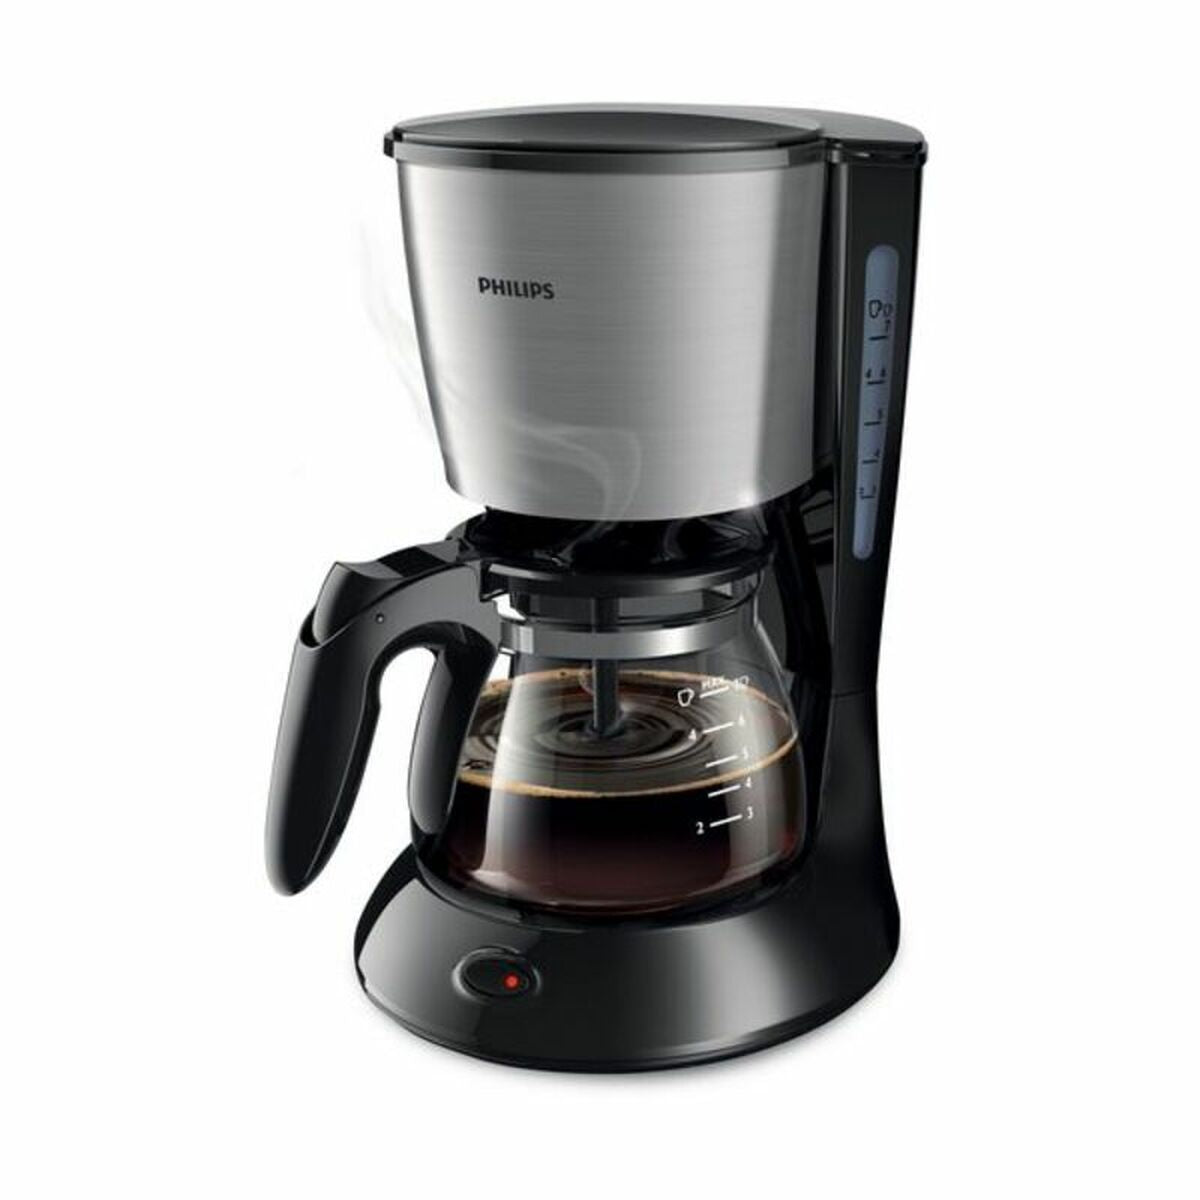 滴咖啡机Philips HD7435/20 700 W黑色700 W 6杯